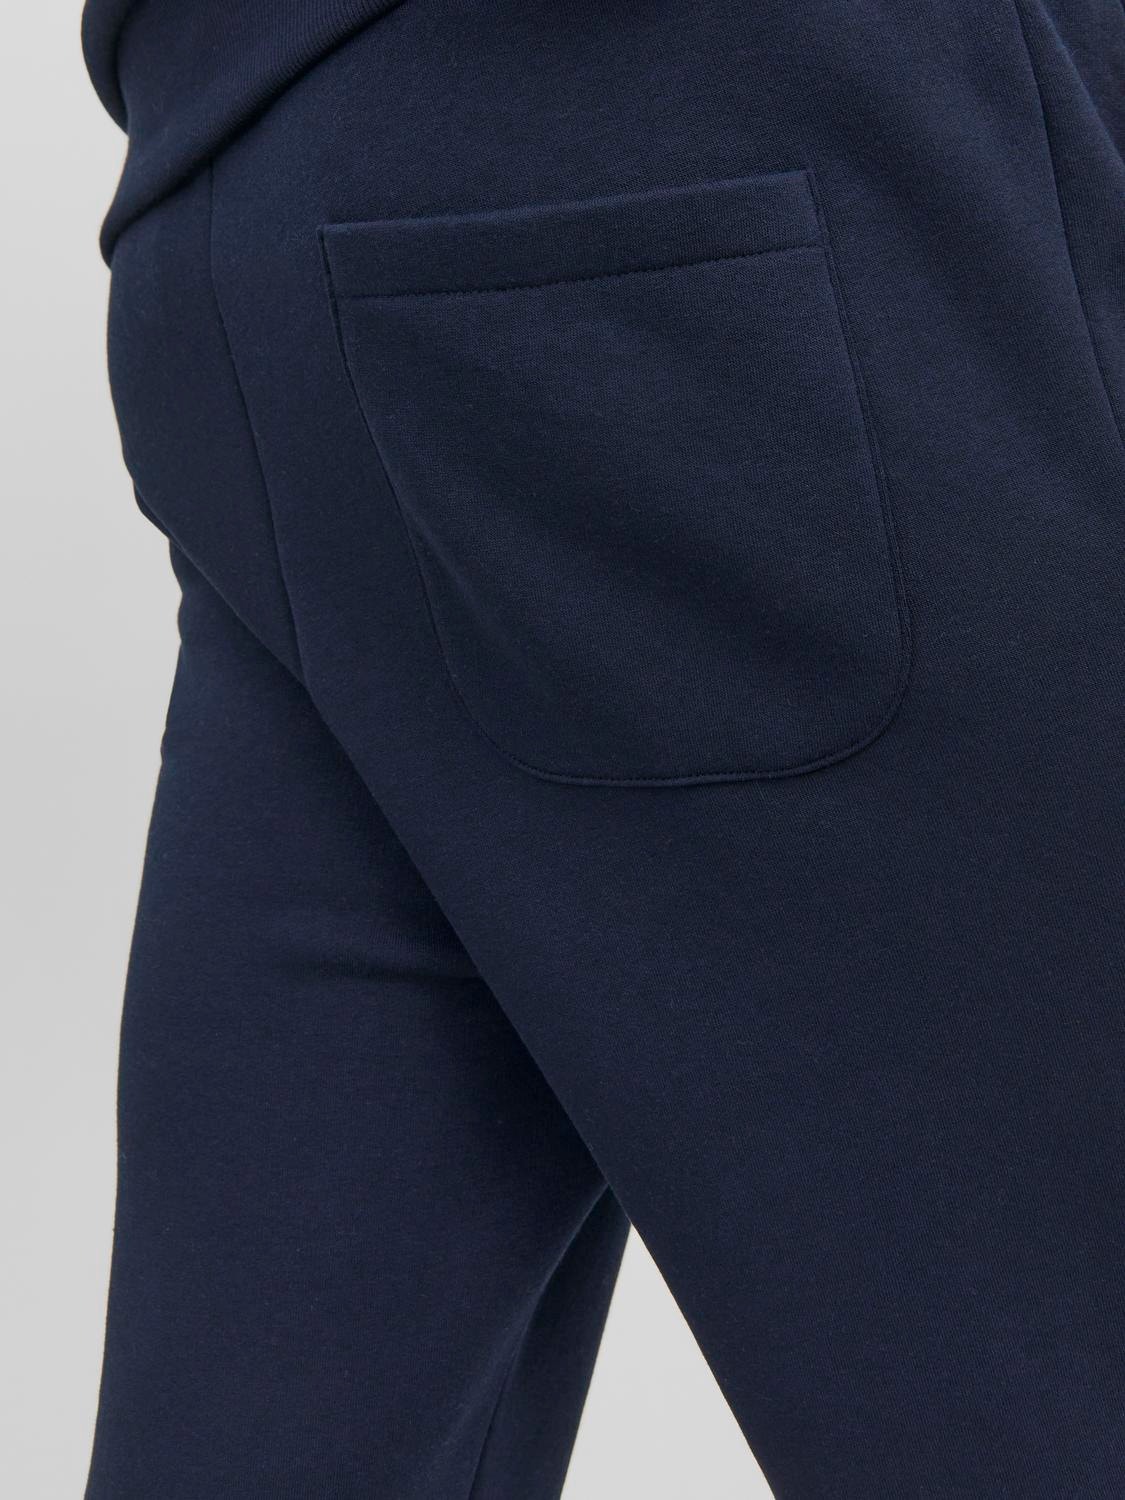 Jack & Jones Pantalones de chándal Regular Fit -Navy Blazer - 12249274